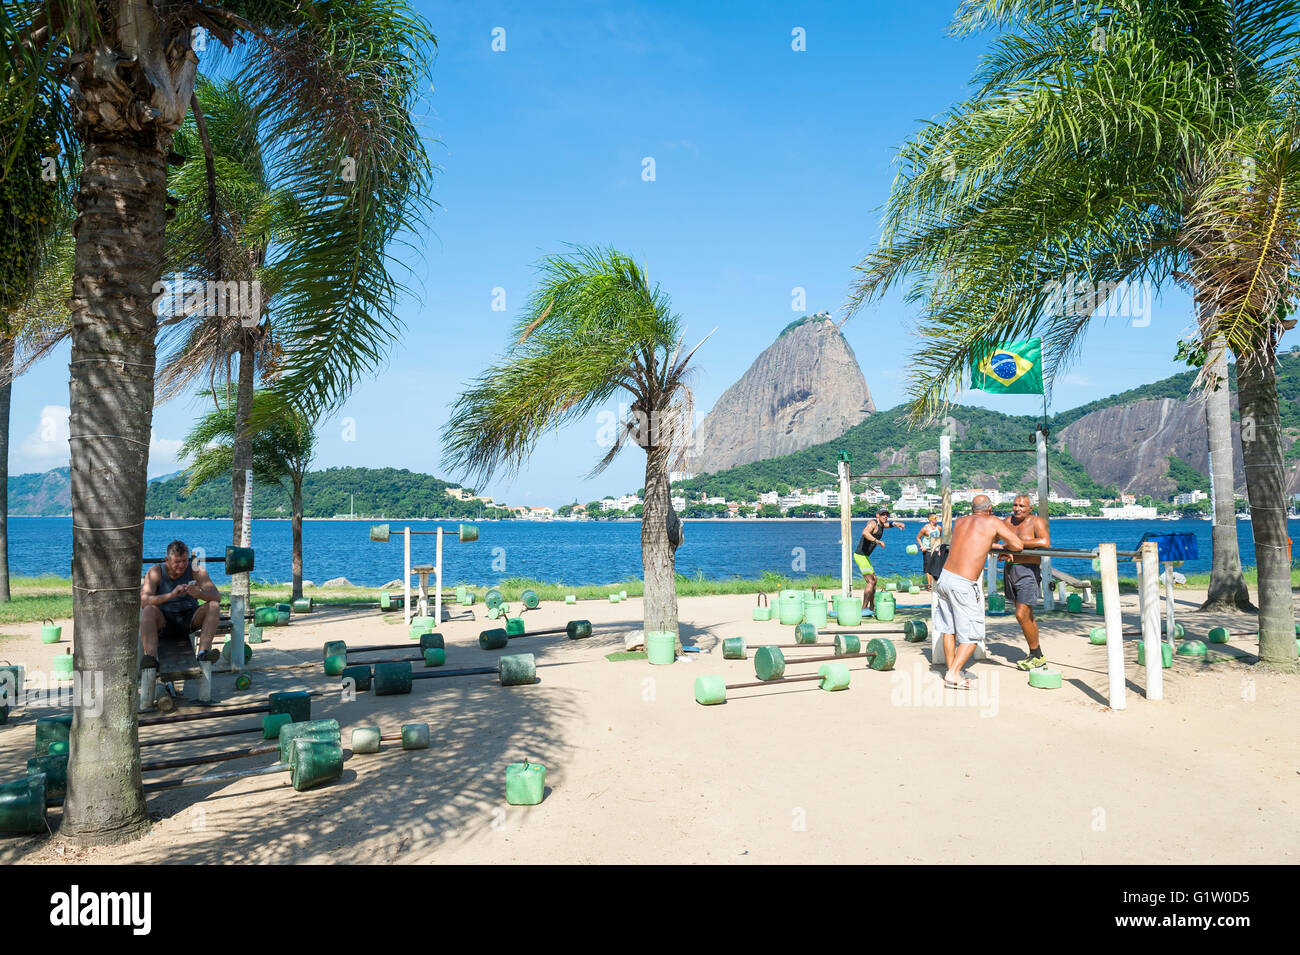 RIO DE JANEIRO - 5. April 2016: Brasilianer trainieren Sie in einer outdoor-Training-Station im Stadtteil Flamengo mit Zuckerhut. Stockfoto